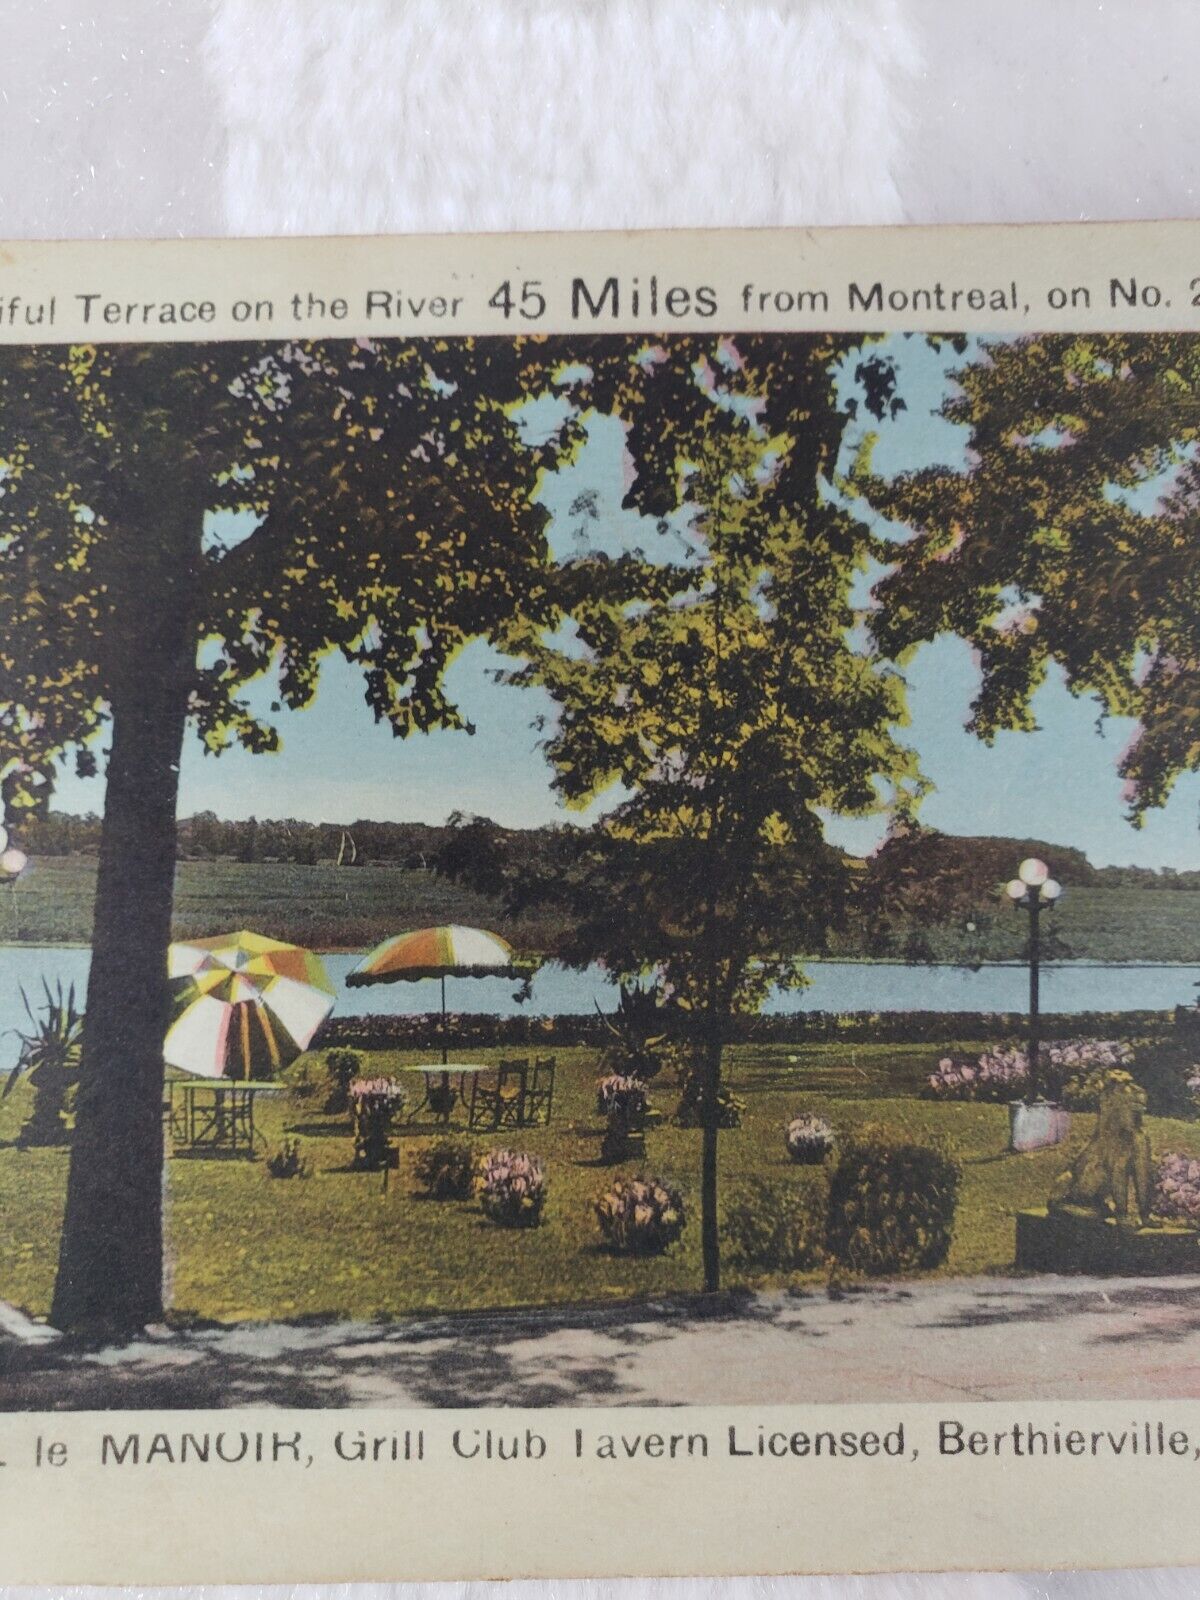 C 1946 Hotel le Manoir Grill Club Tavern Terrace Berthierville Quebec Postcard